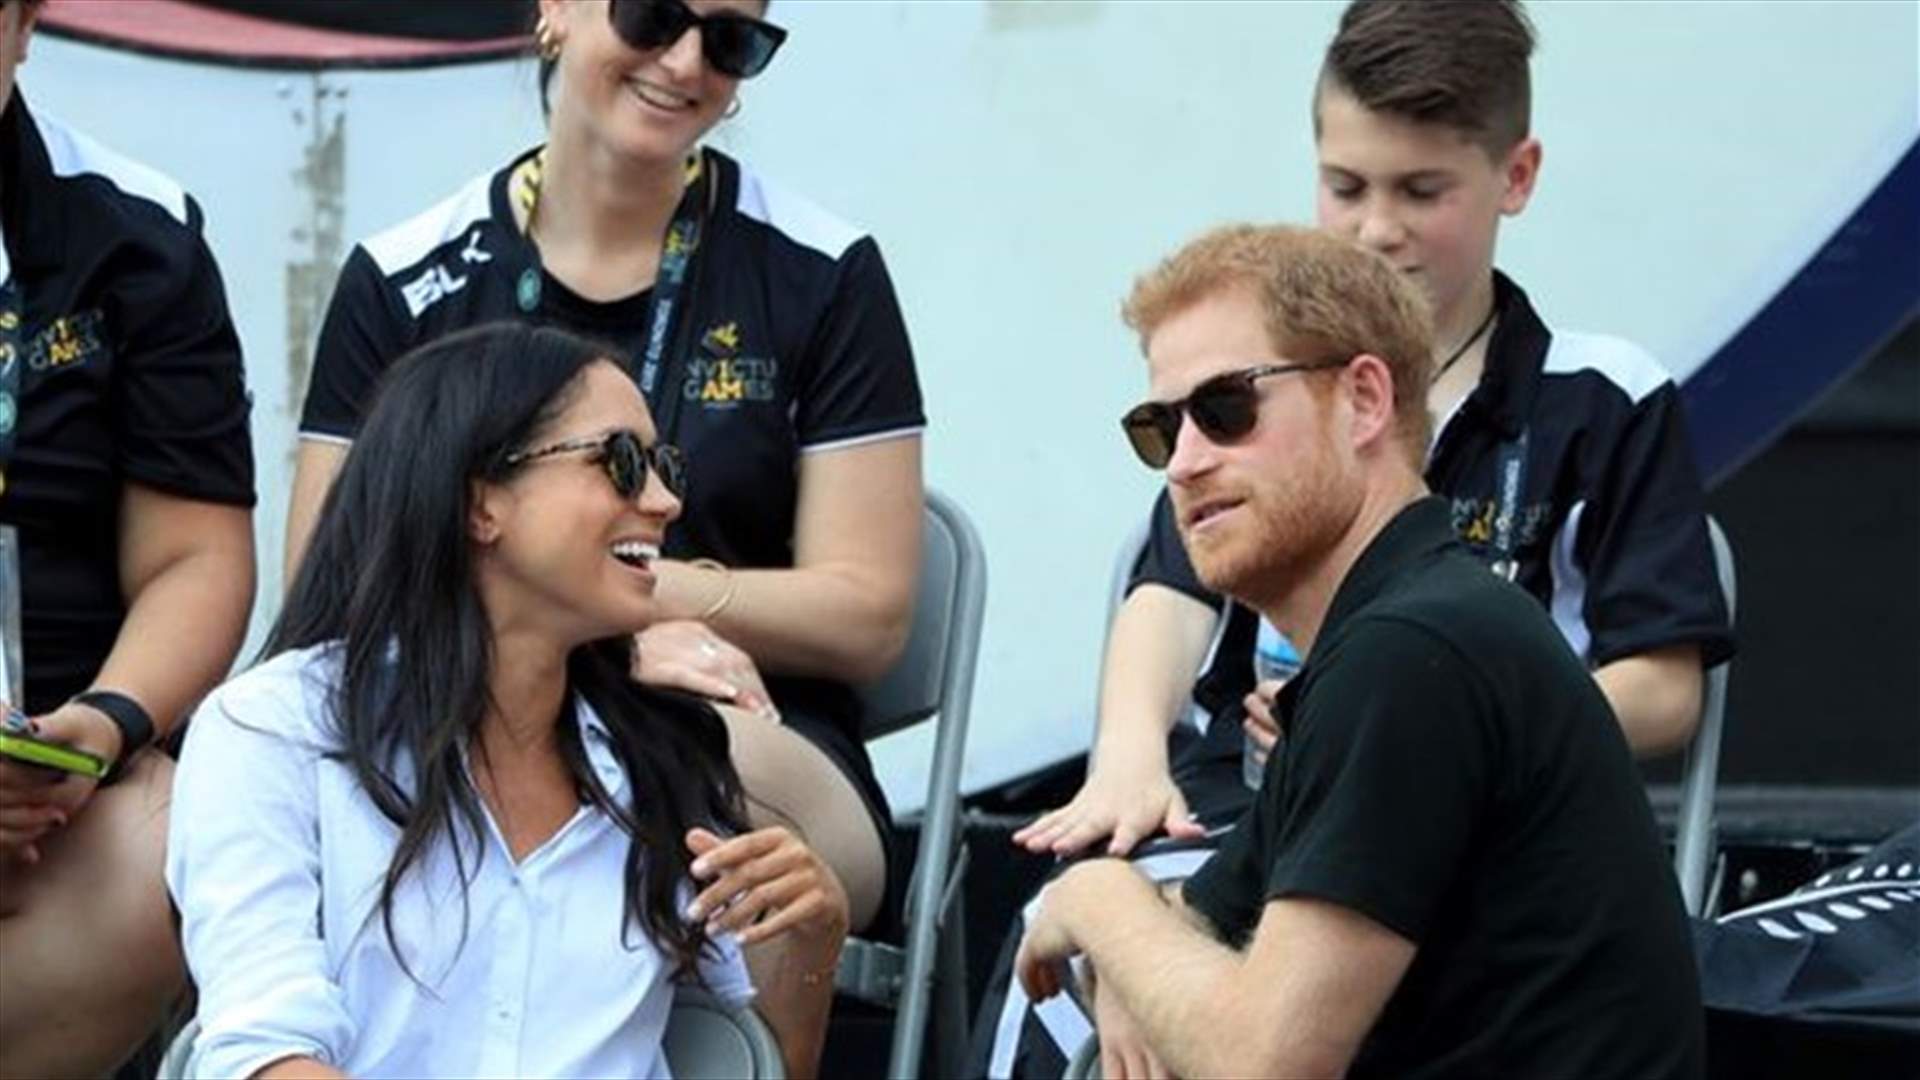 بالصور – الأمير هاري يكسر القواعد الملكية مع حبيبته الأميركية!